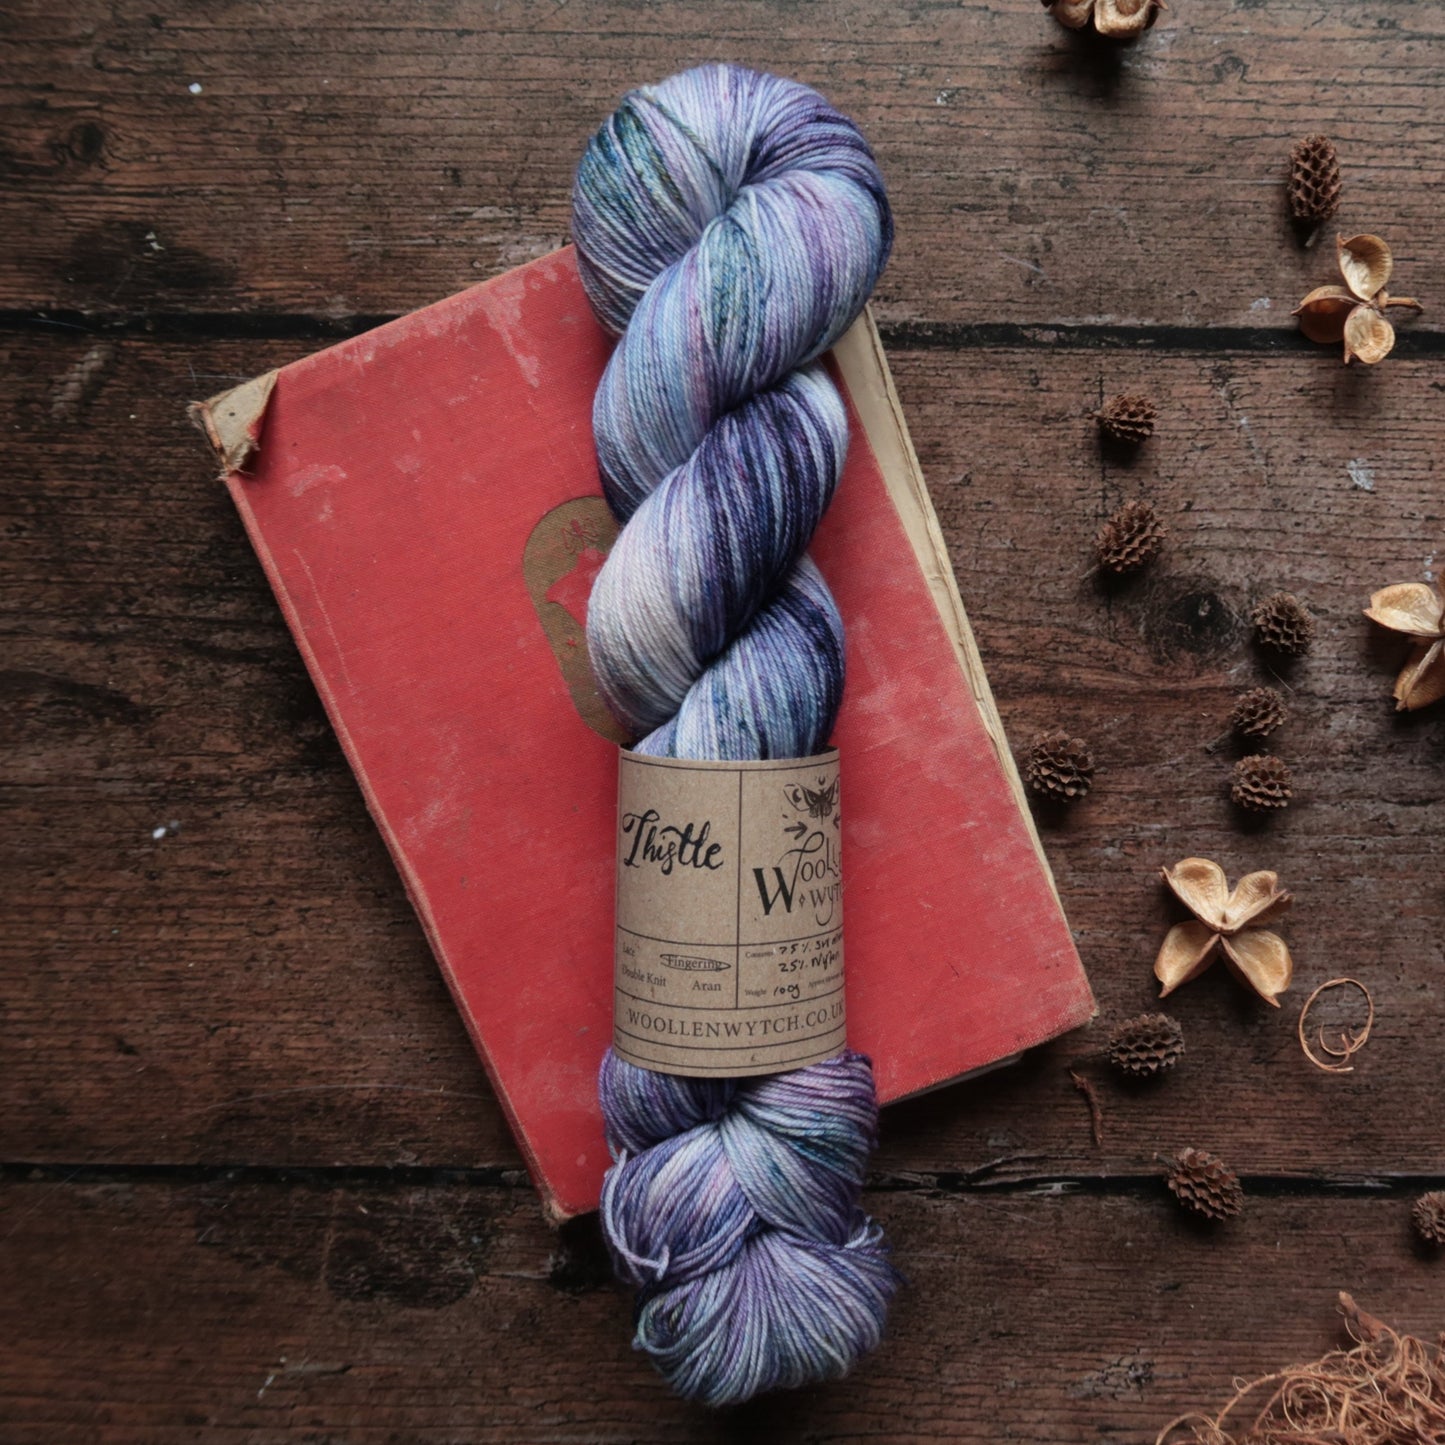 Thistle - Sock/ 4ply Yarn Yarn Woollen Wytch 